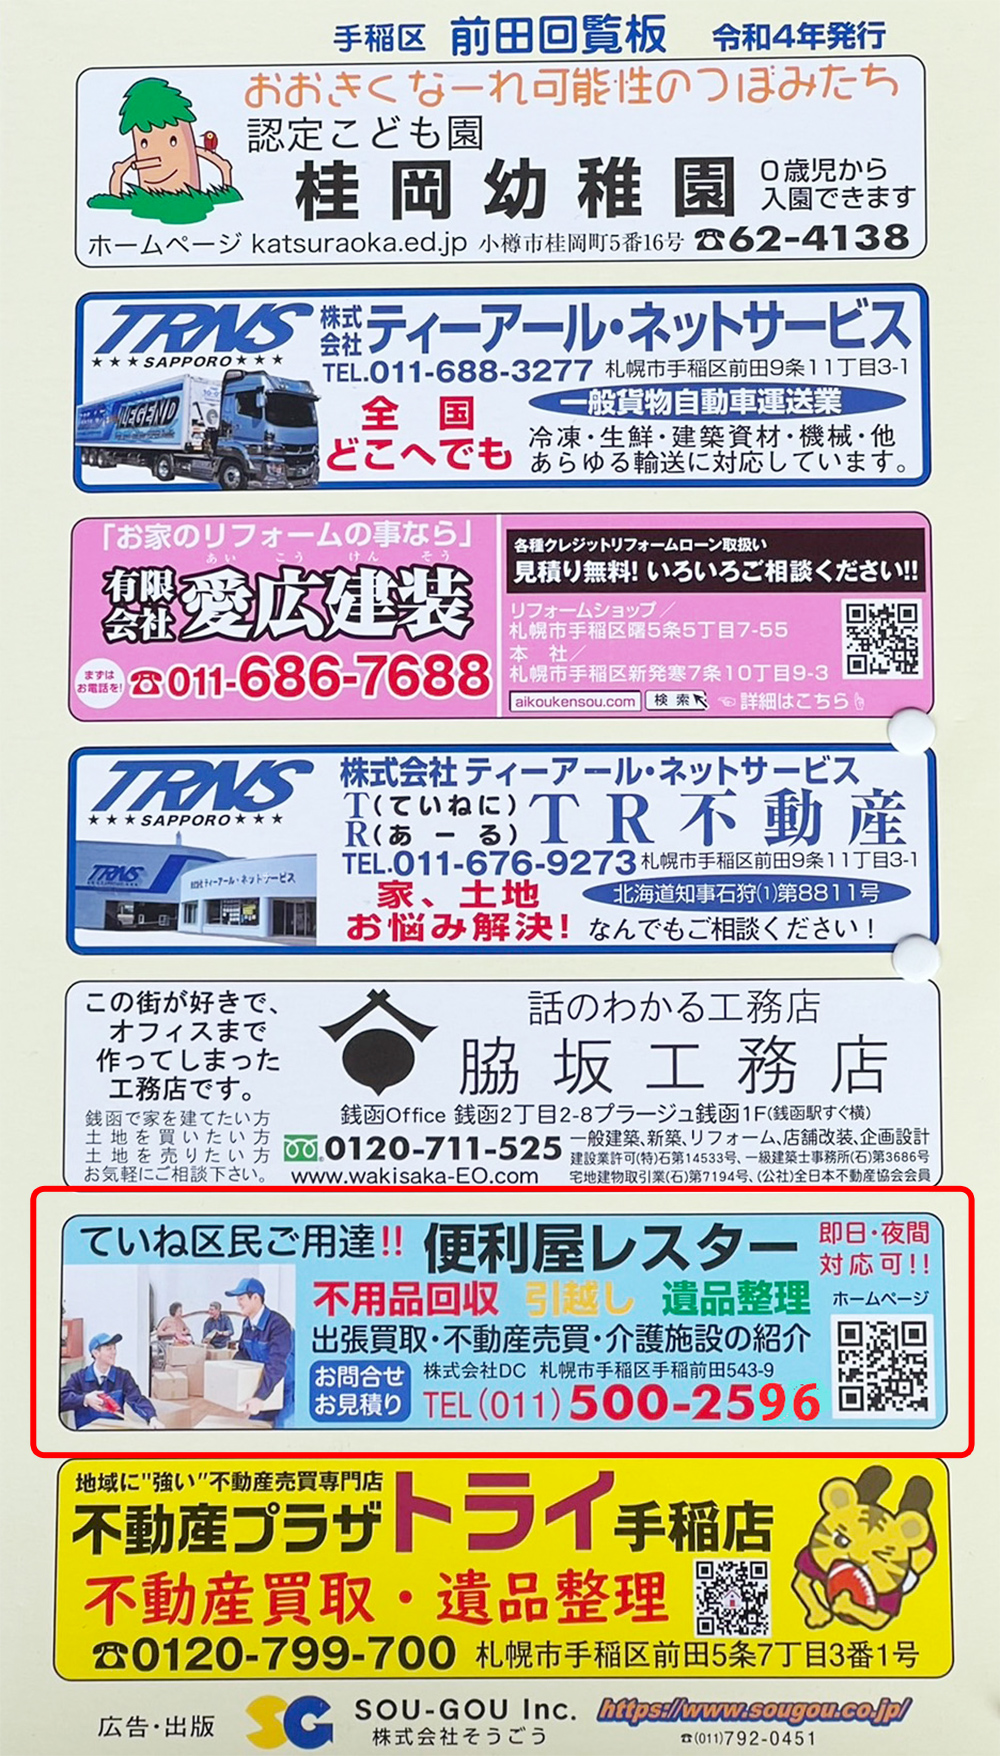 便利屋レスターはポータブルサイトで1位を獲得したり札幌市と連携し町内会に回覧板を掲載しております。